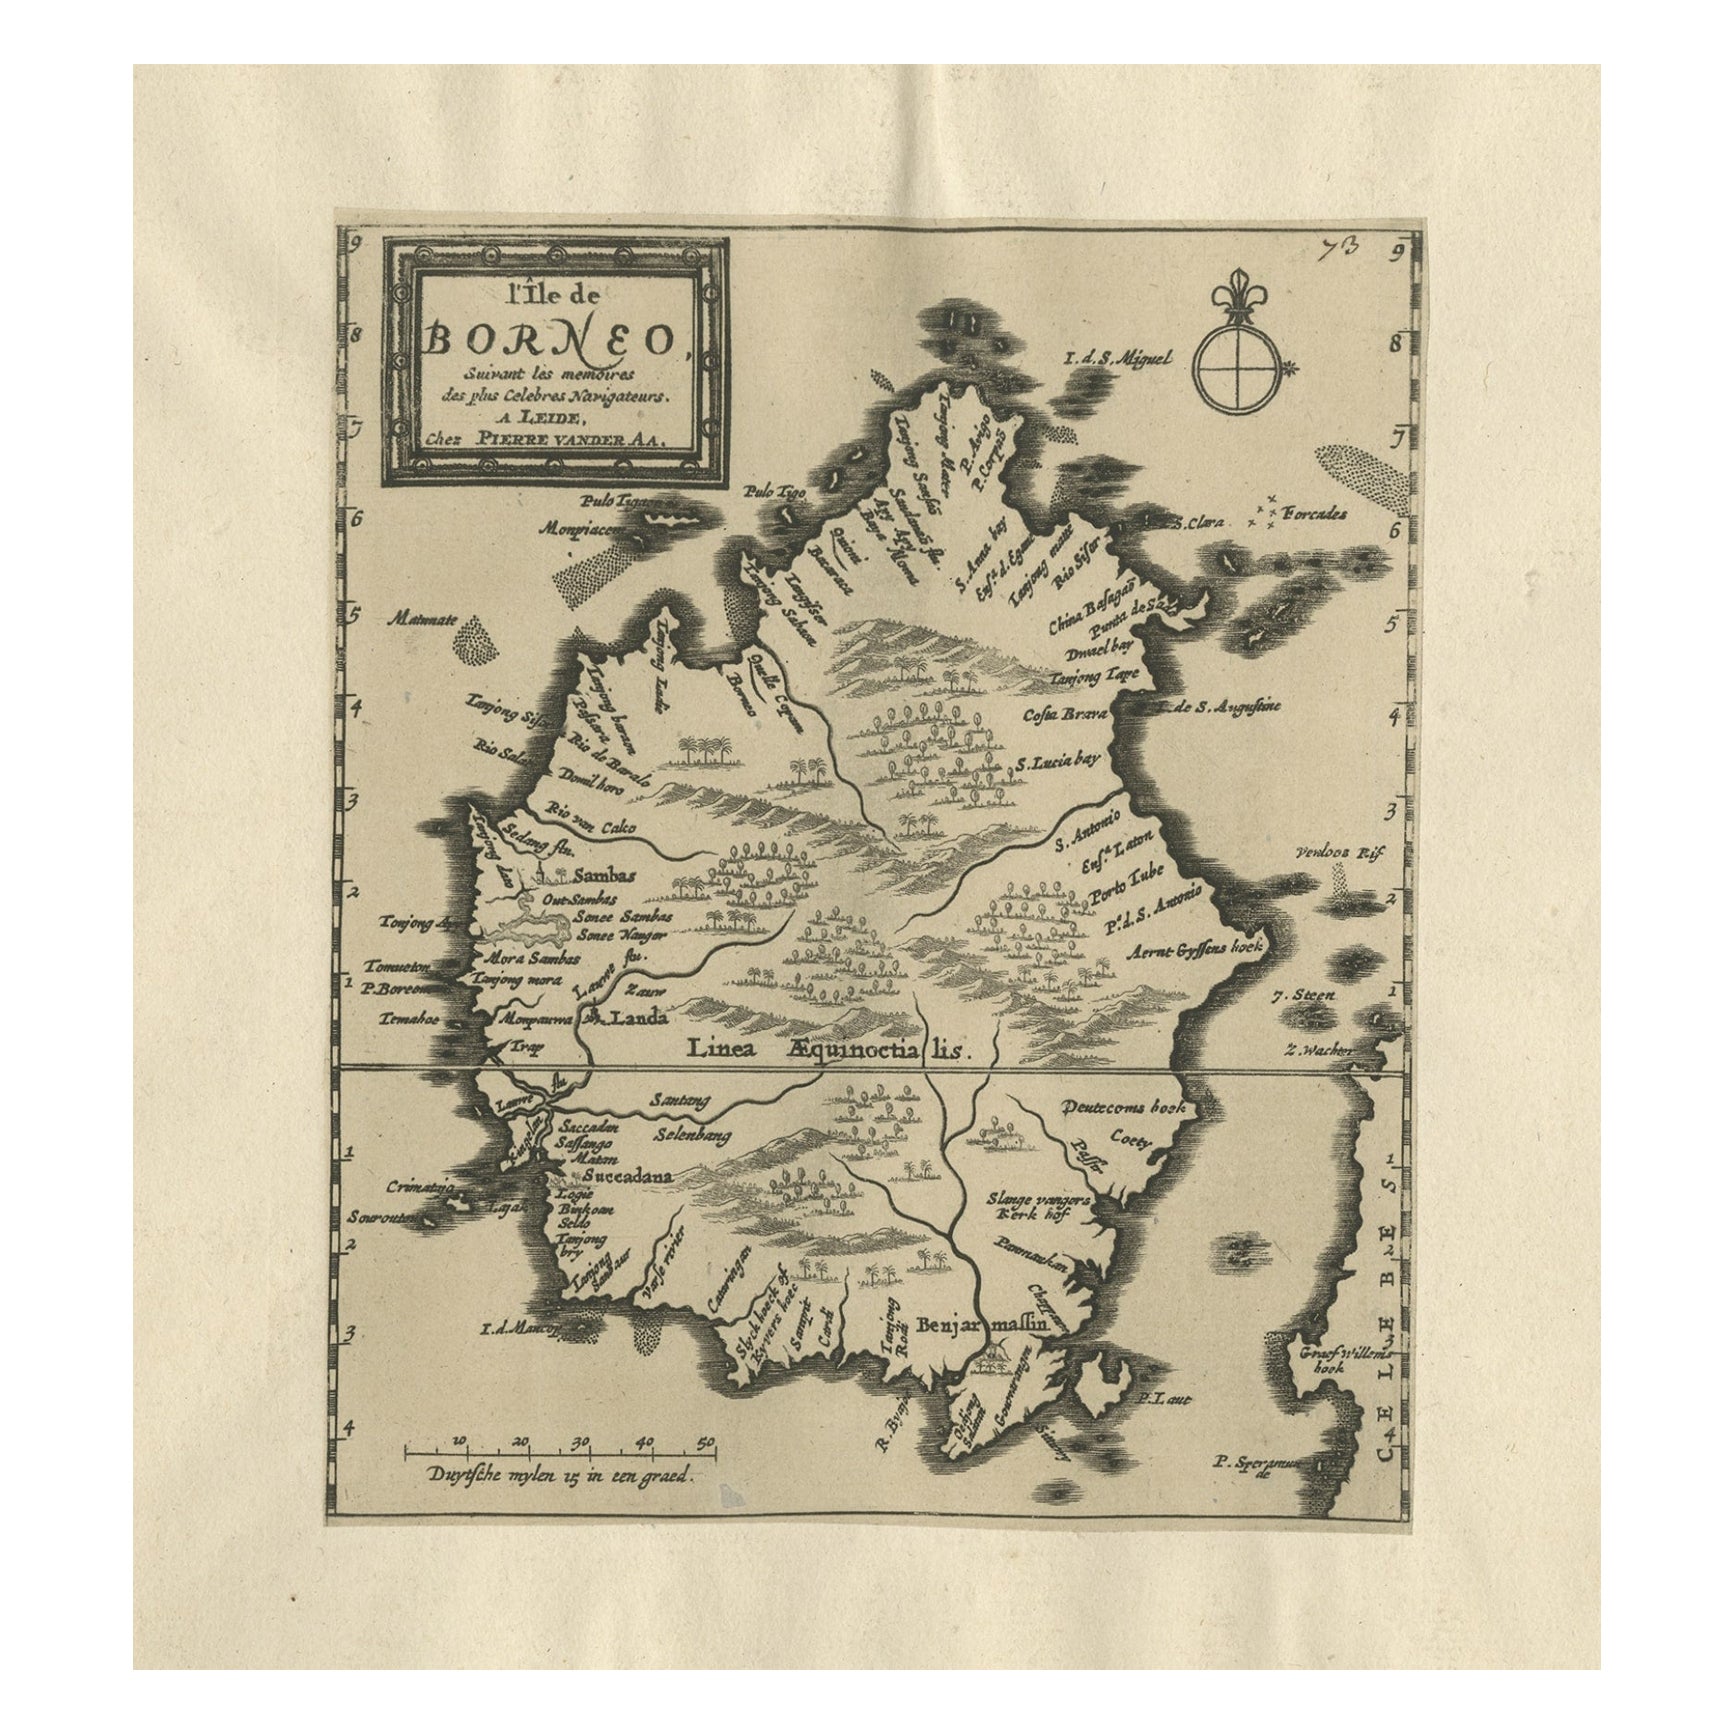 Äußerst seltene antike Karte der Insel Borneo, Indonesien, um 1725